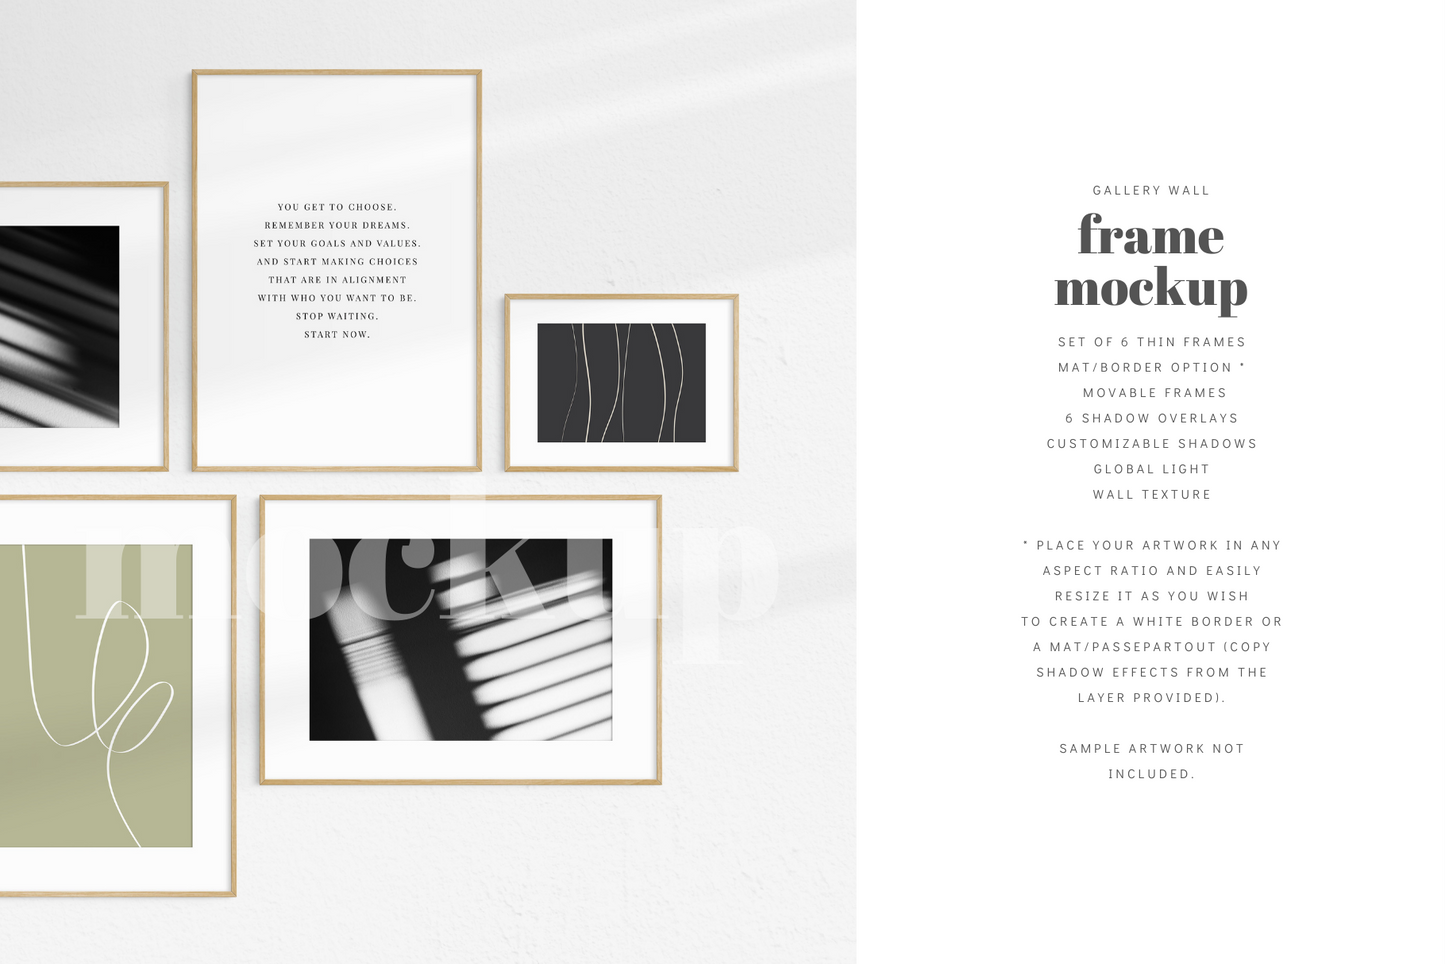 Gallery Wall Mockup | Set of 6 Frames | Frame Mockup | Oak Timber | PSD